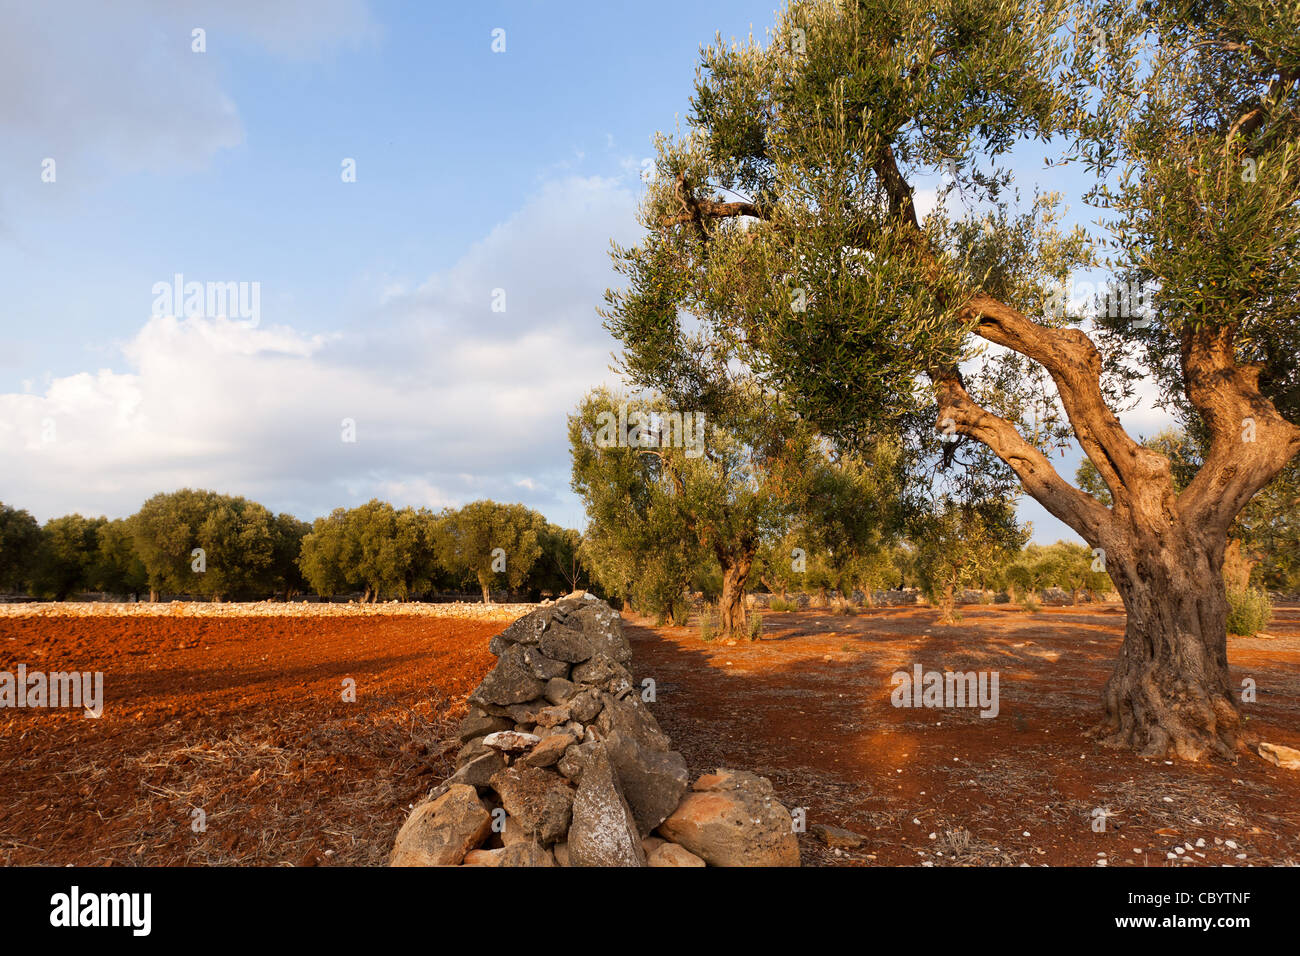 PLOUGHED FIELD AND OLIVE TREES, FARMING IN THE REGION OF CASTRIGNANO DEL CAPO, PUGLIA, ITALY Stock Photo